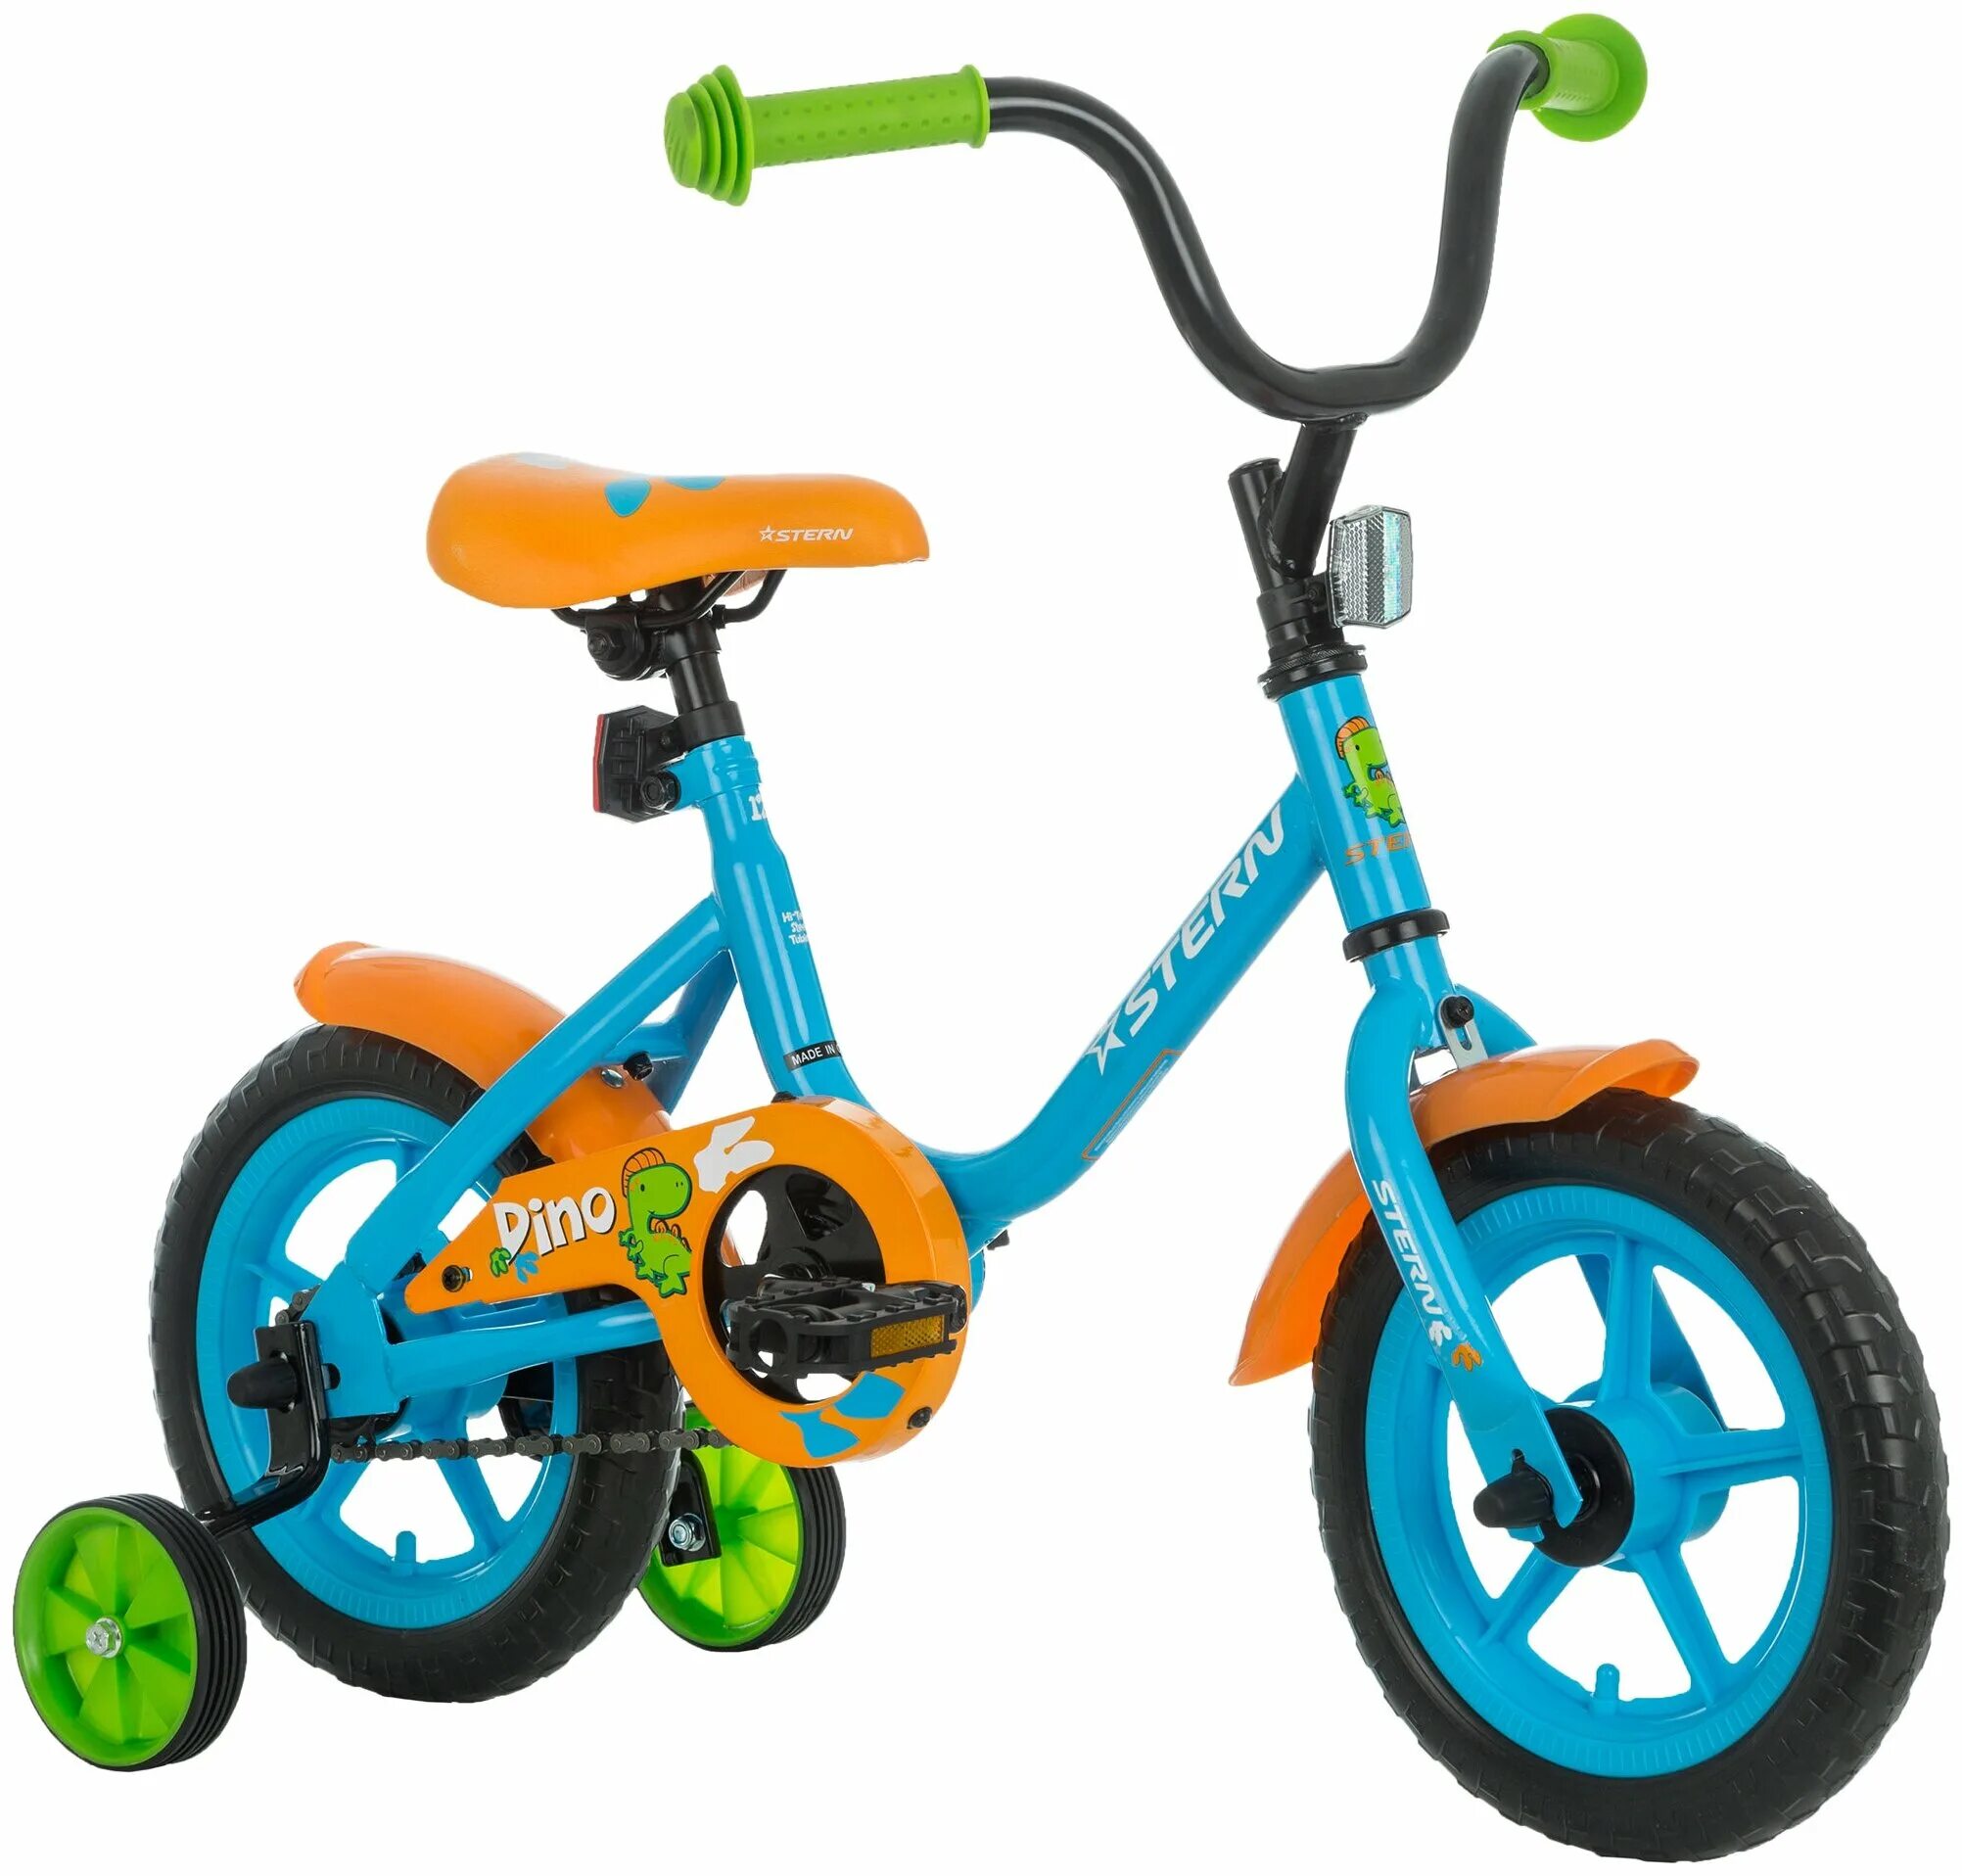 Детское велик цена. Велосипед Stern Dino 12. Детский велосипед Stern 12. Велосипед детский двухколесный Stern. Stern 2017 велосипед зелёный.